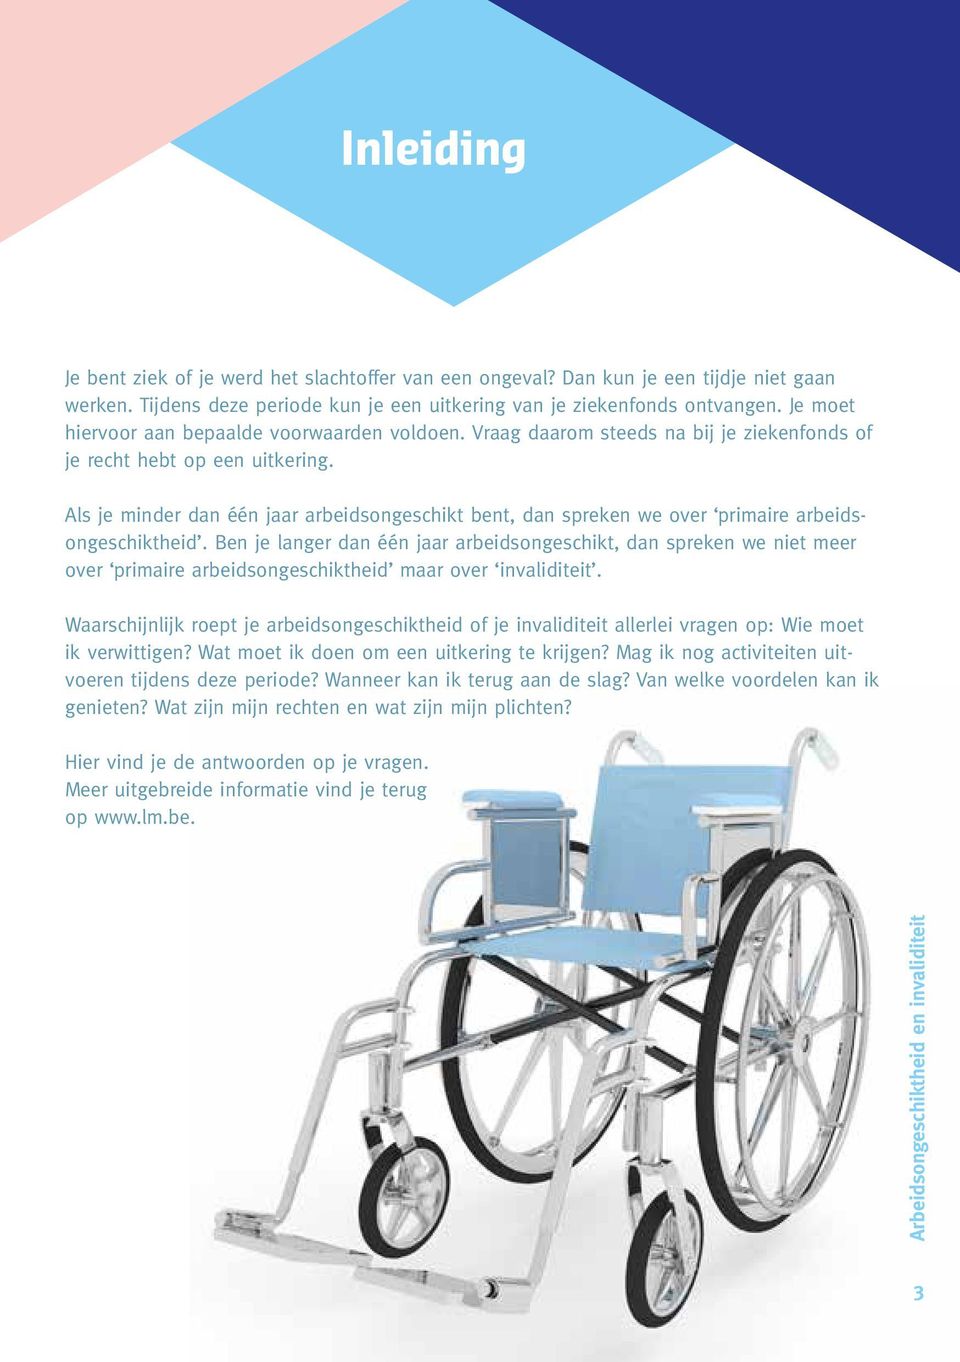 Werken tijdens invaliditeit